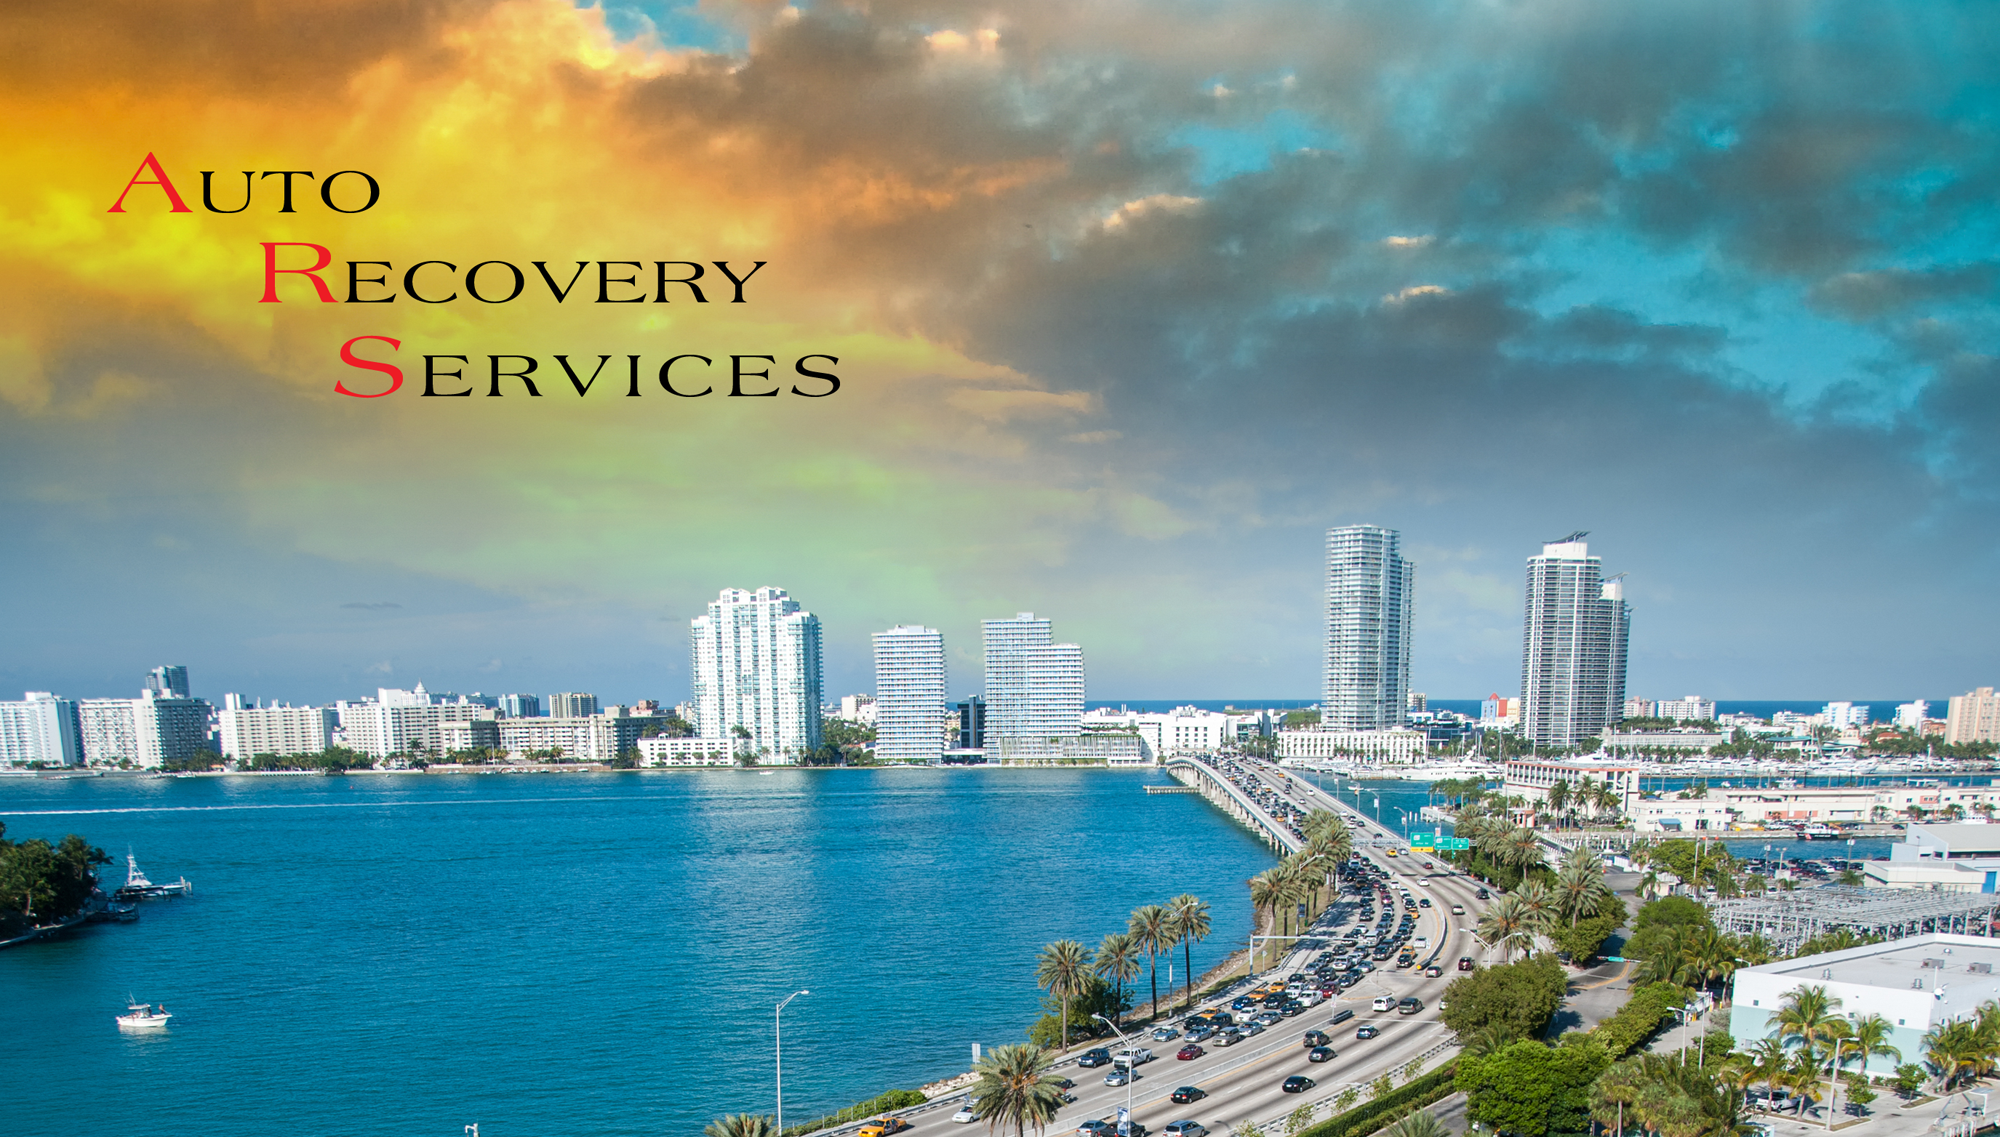 Miami Auto Recovery Services